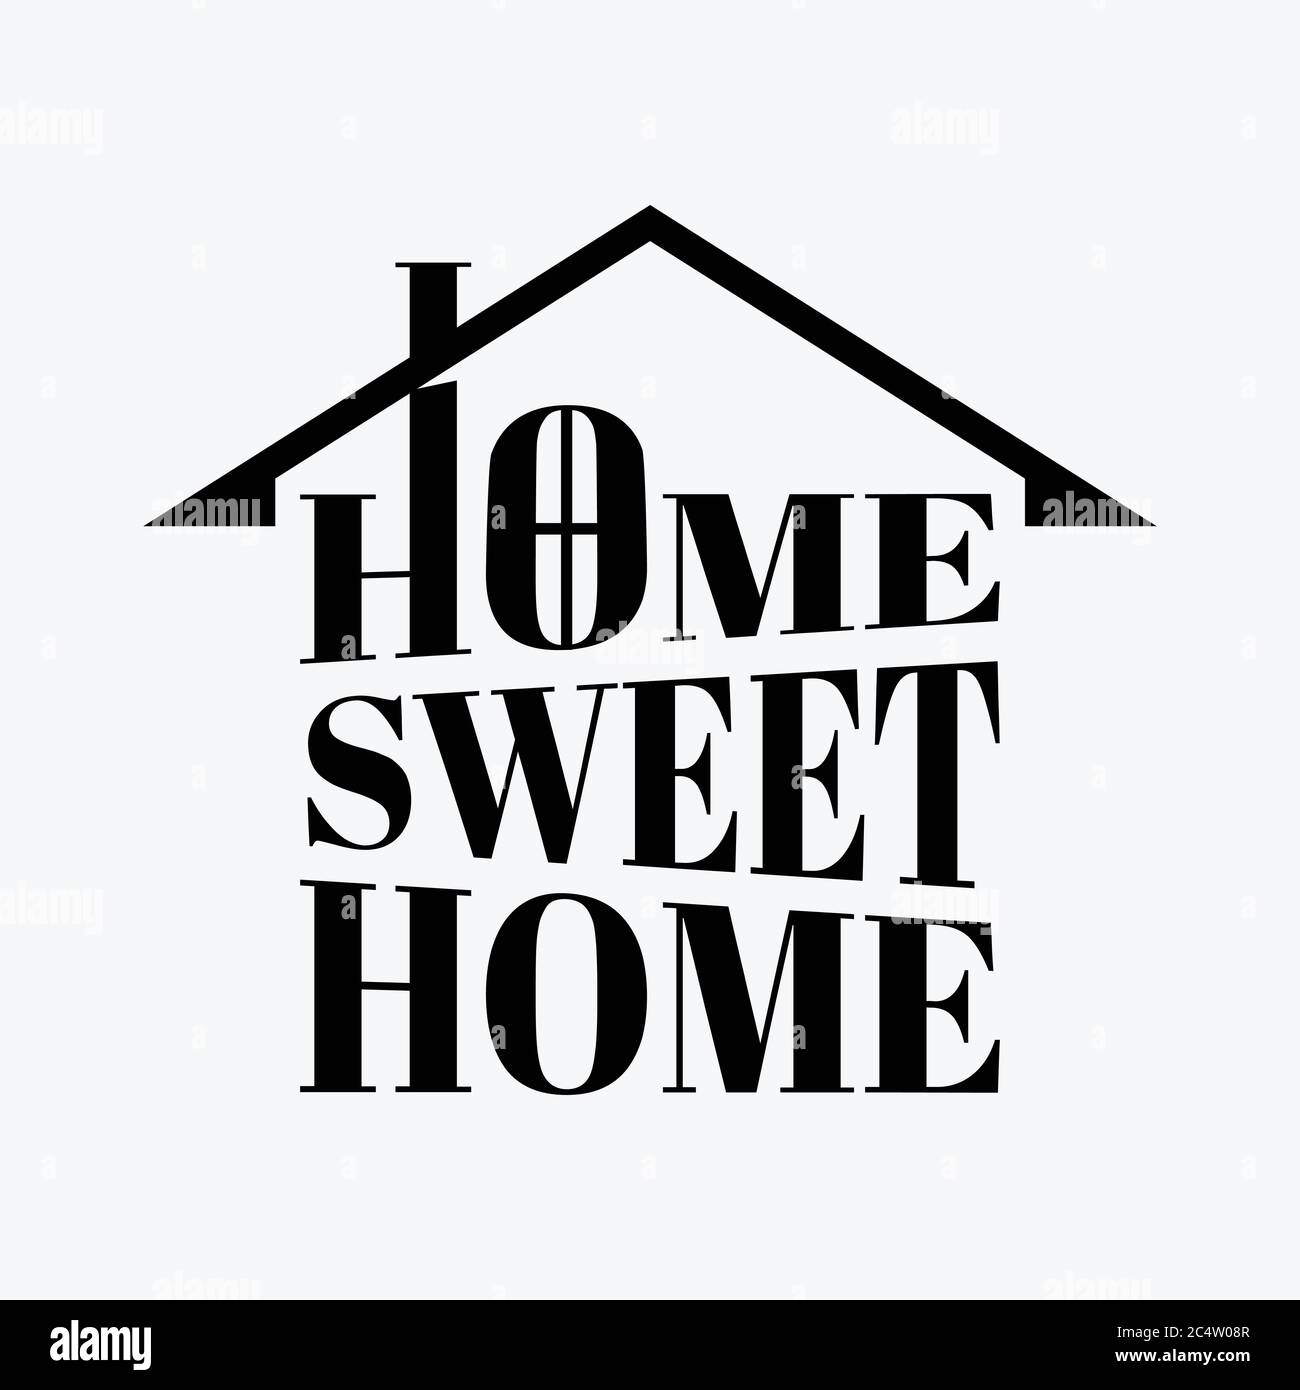 Citazione tipografica Casa dolce casa. Per poster di riscaldamento domestico, biglietti d'auguri, decorazione domestica. Illustrazione vettoriale EPS.8 EPS.10 Illustrazione Vettoriale